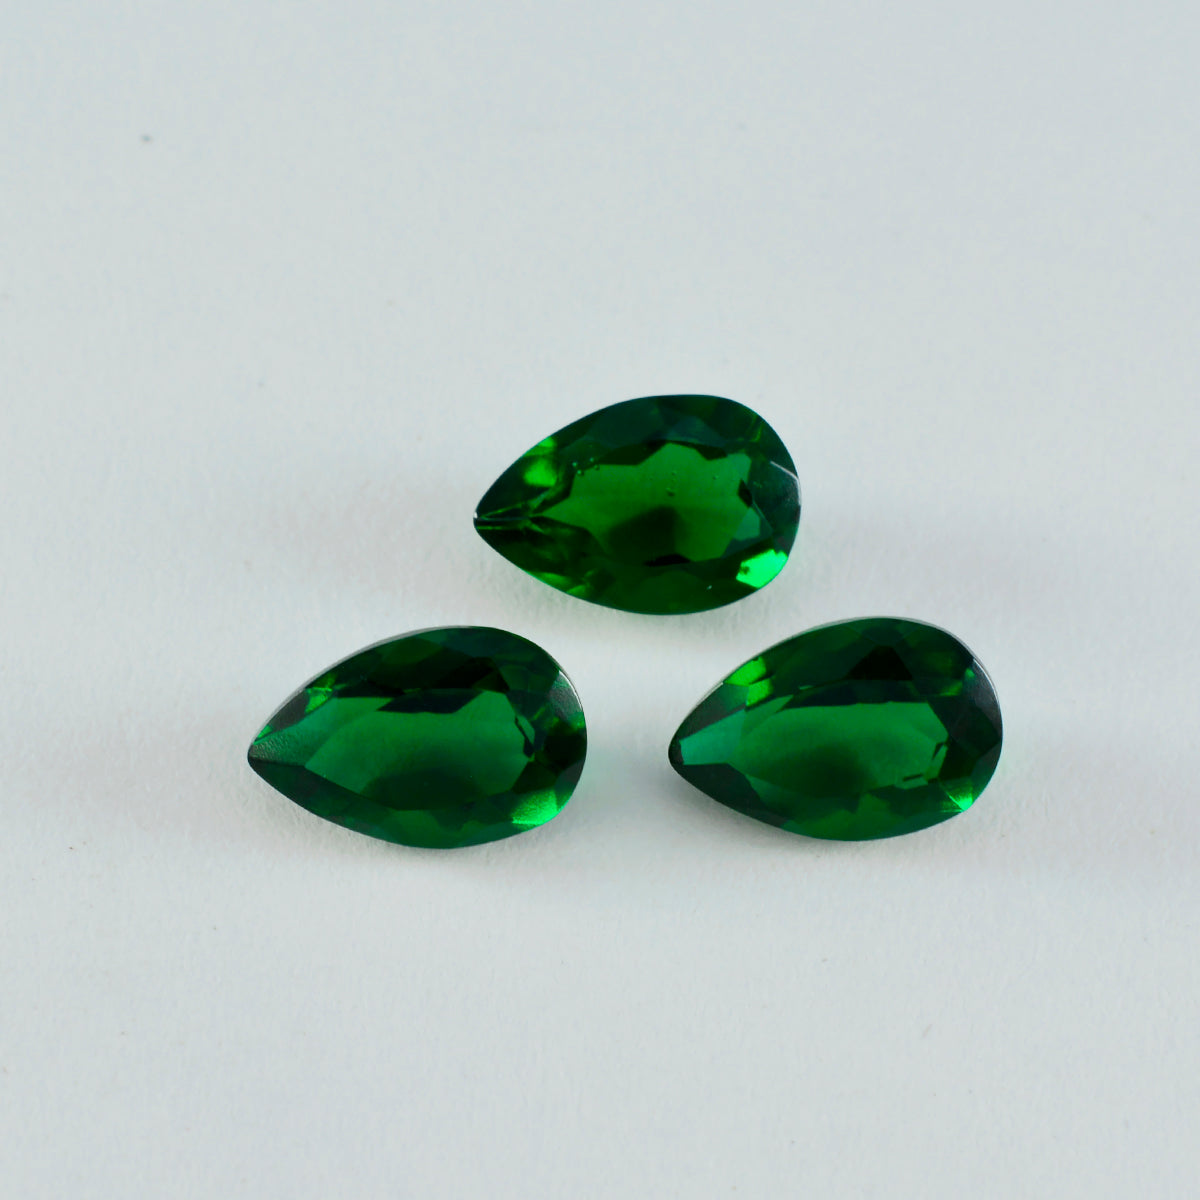 Riyogems 1PC Green Emerald CZ Faceted 8x12 mm Pear Shape wonderful Quality Gemstone